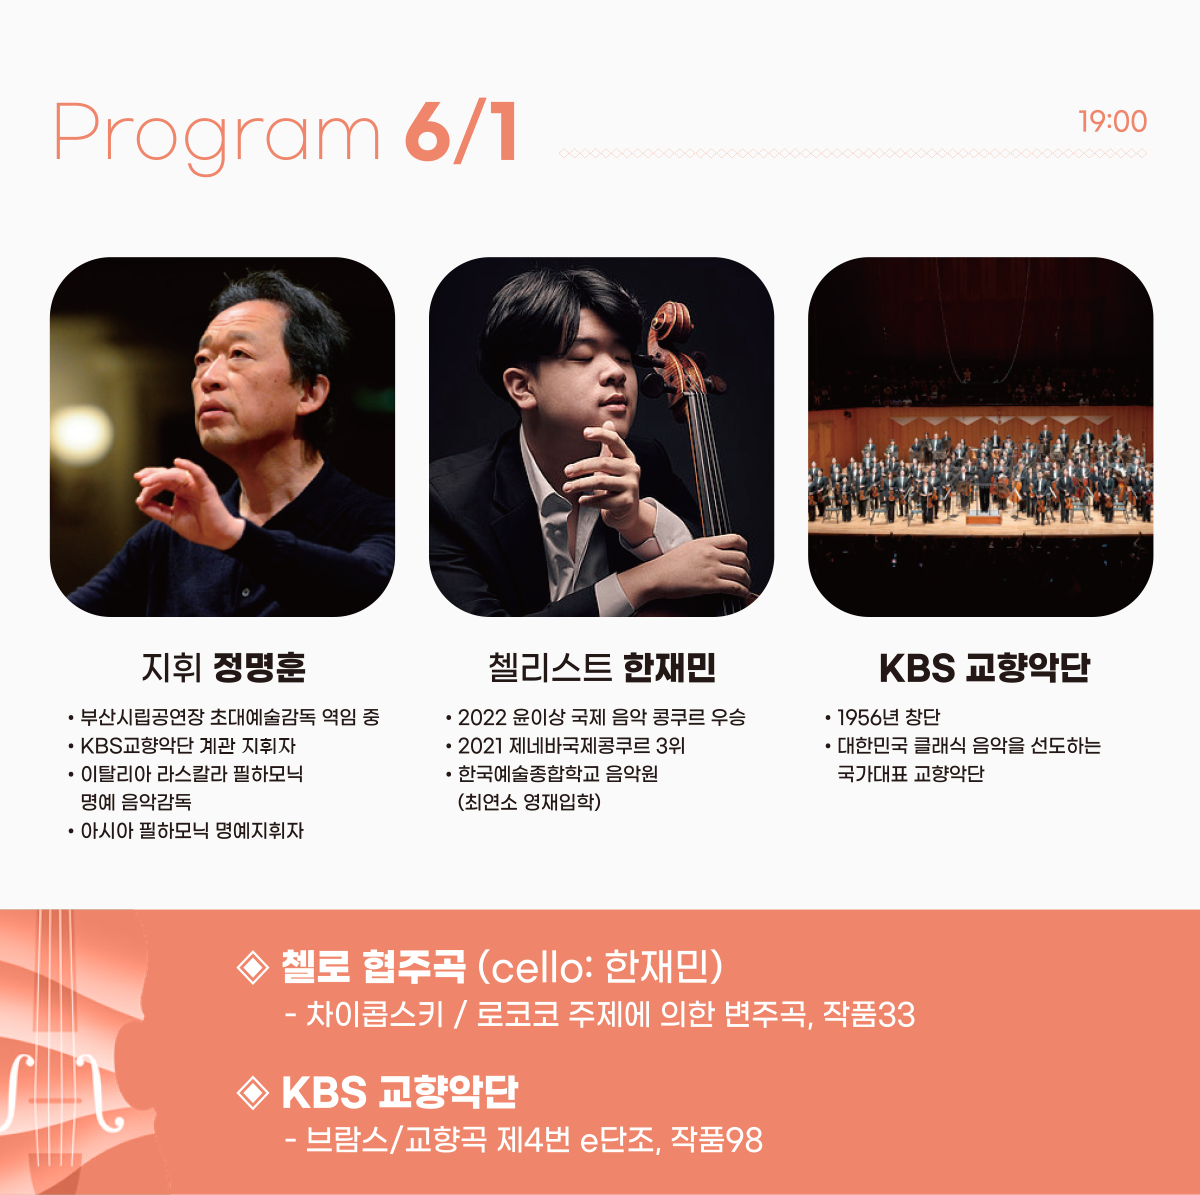 Program 6.1 (19:00 - 21:00) 지휘 정명훈, 첼리스트 한재민, KBS 교향악단